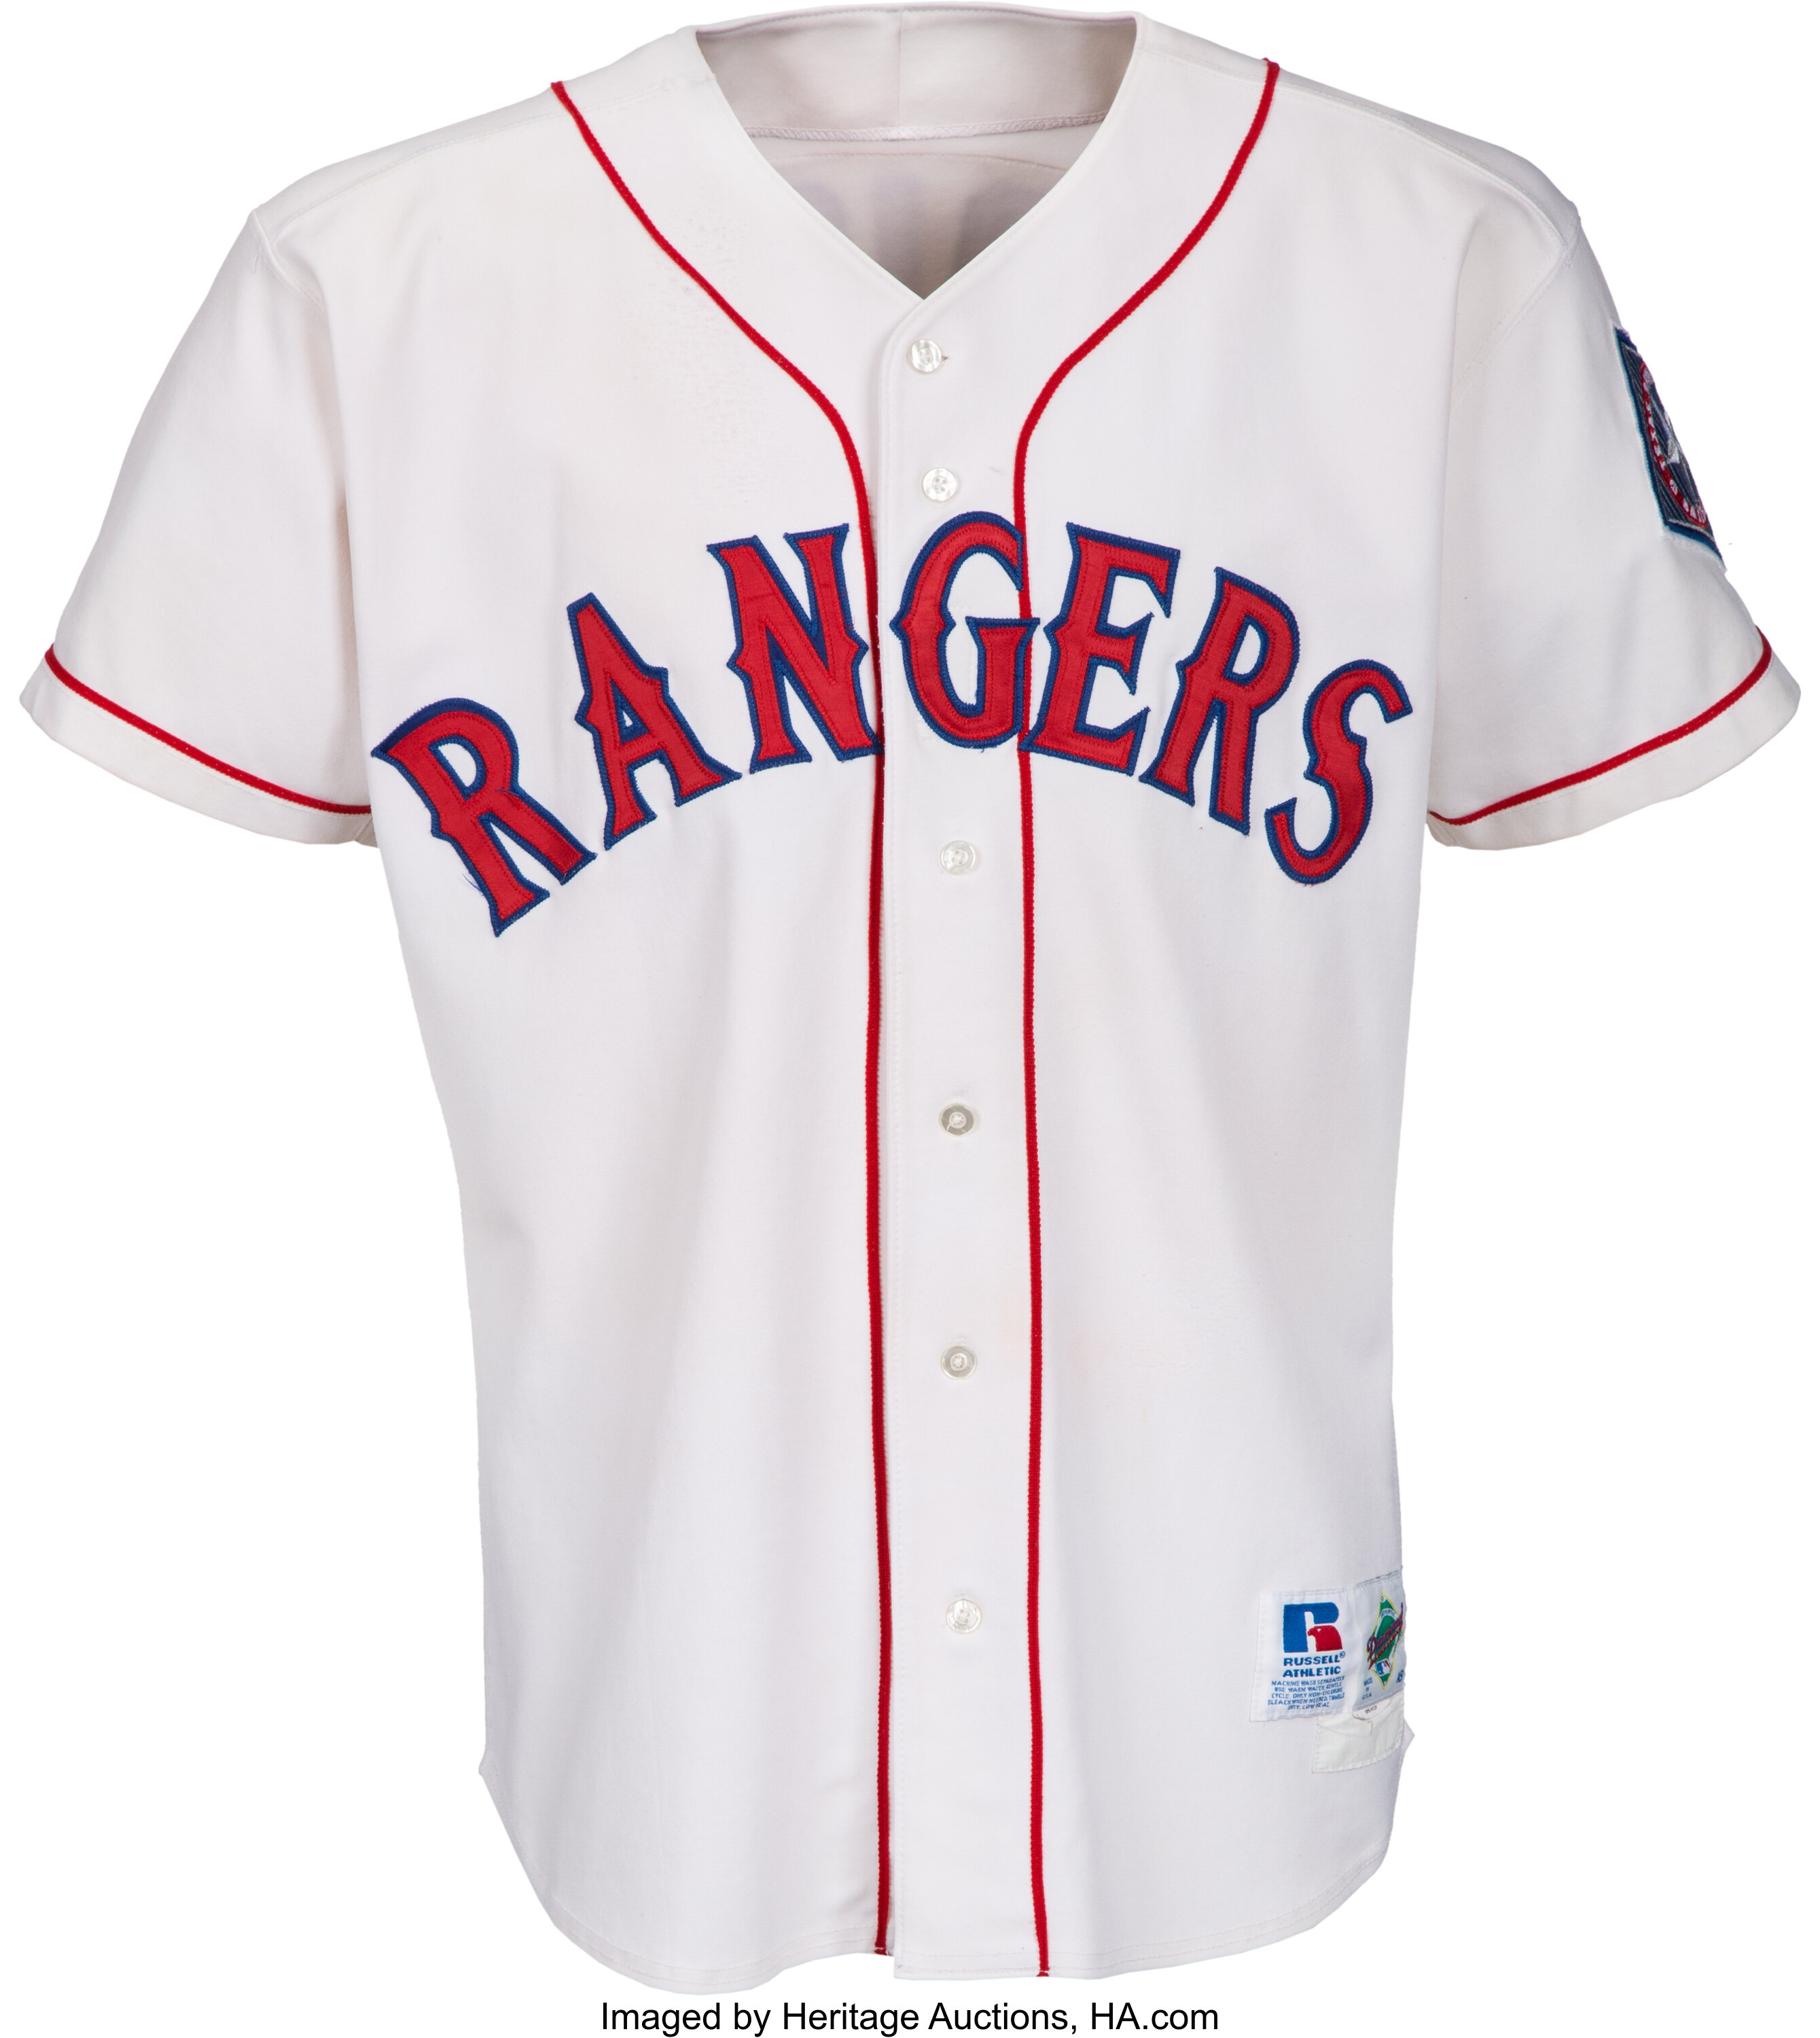 Texas Rangers Jerseys, Rangers Baseball Jersey, Uniforms